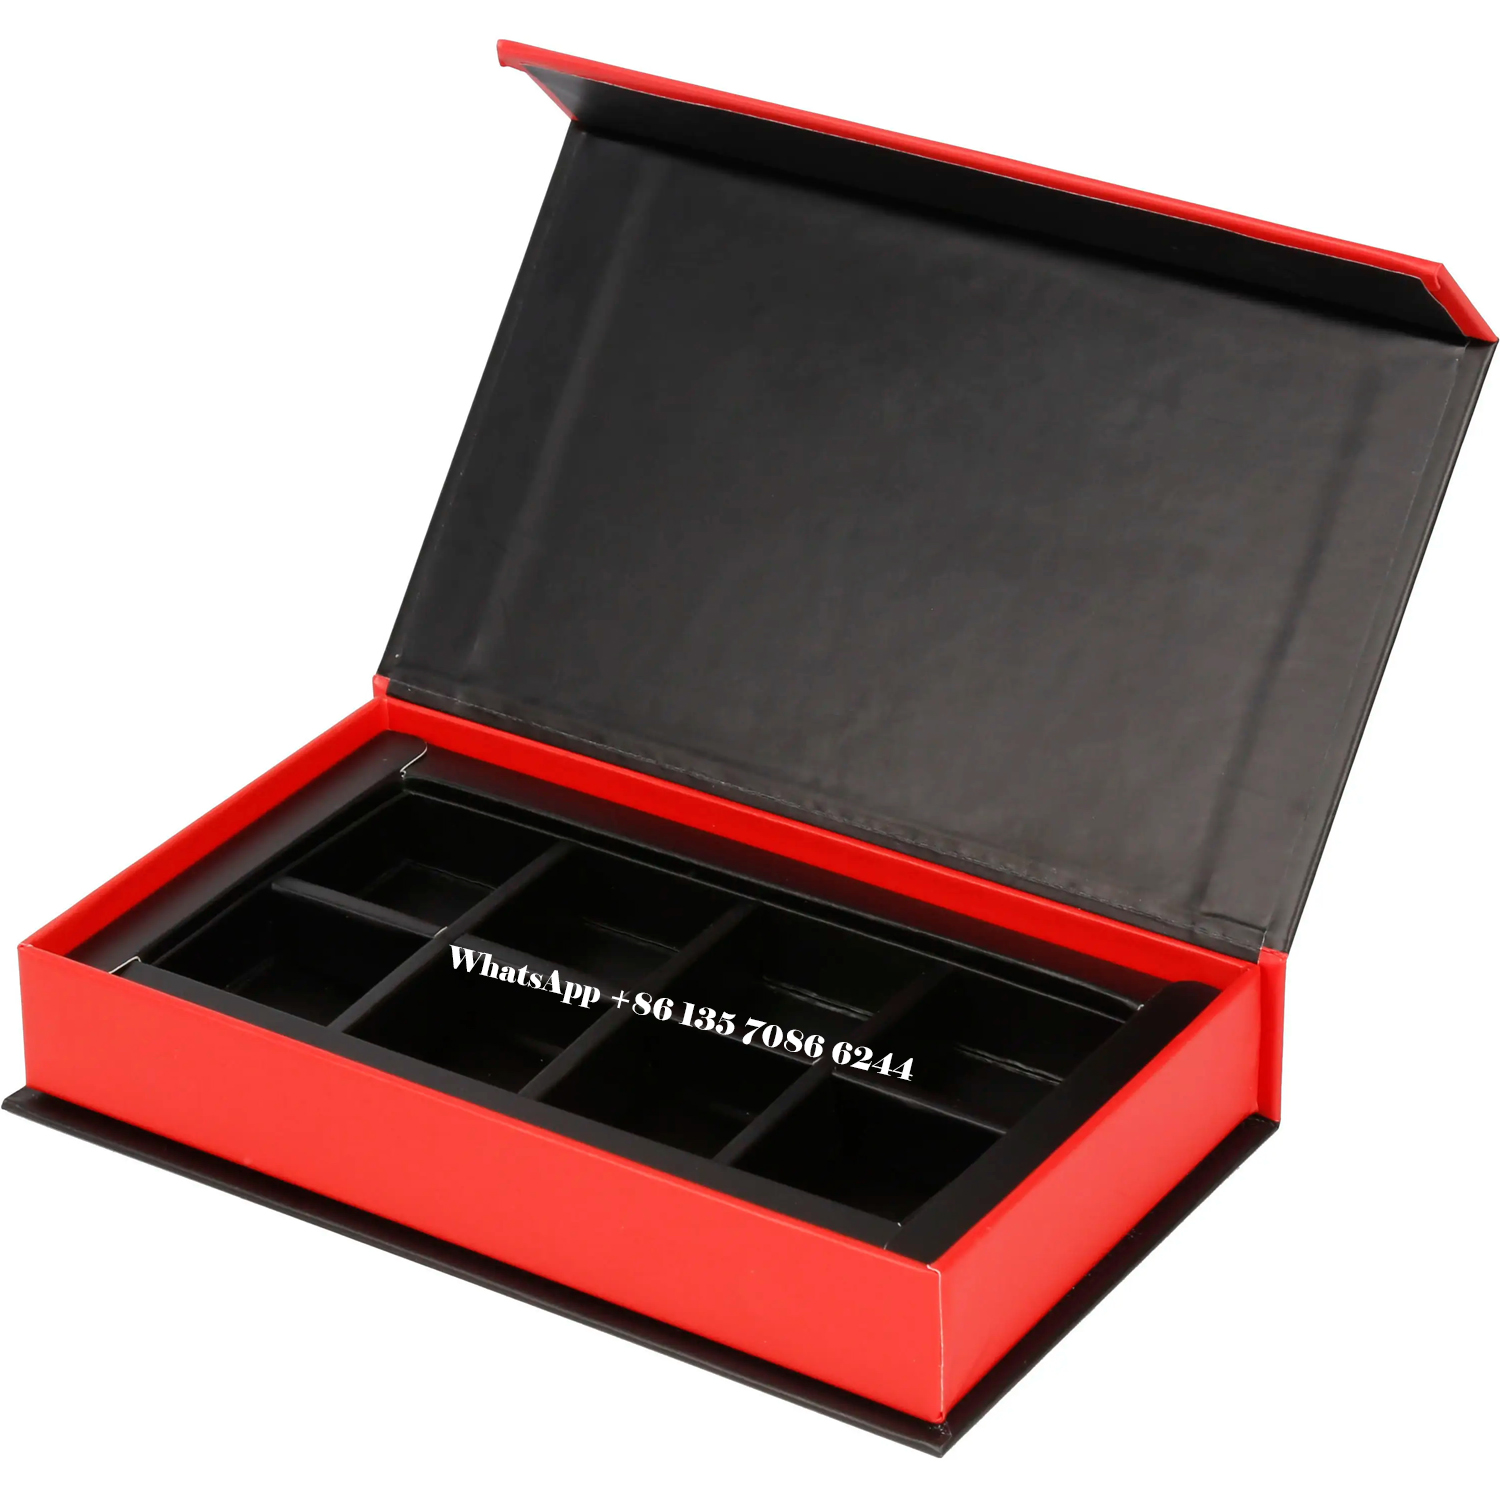  Boîte cadeau magnétique pour chocolats avec séparateurs en carton  